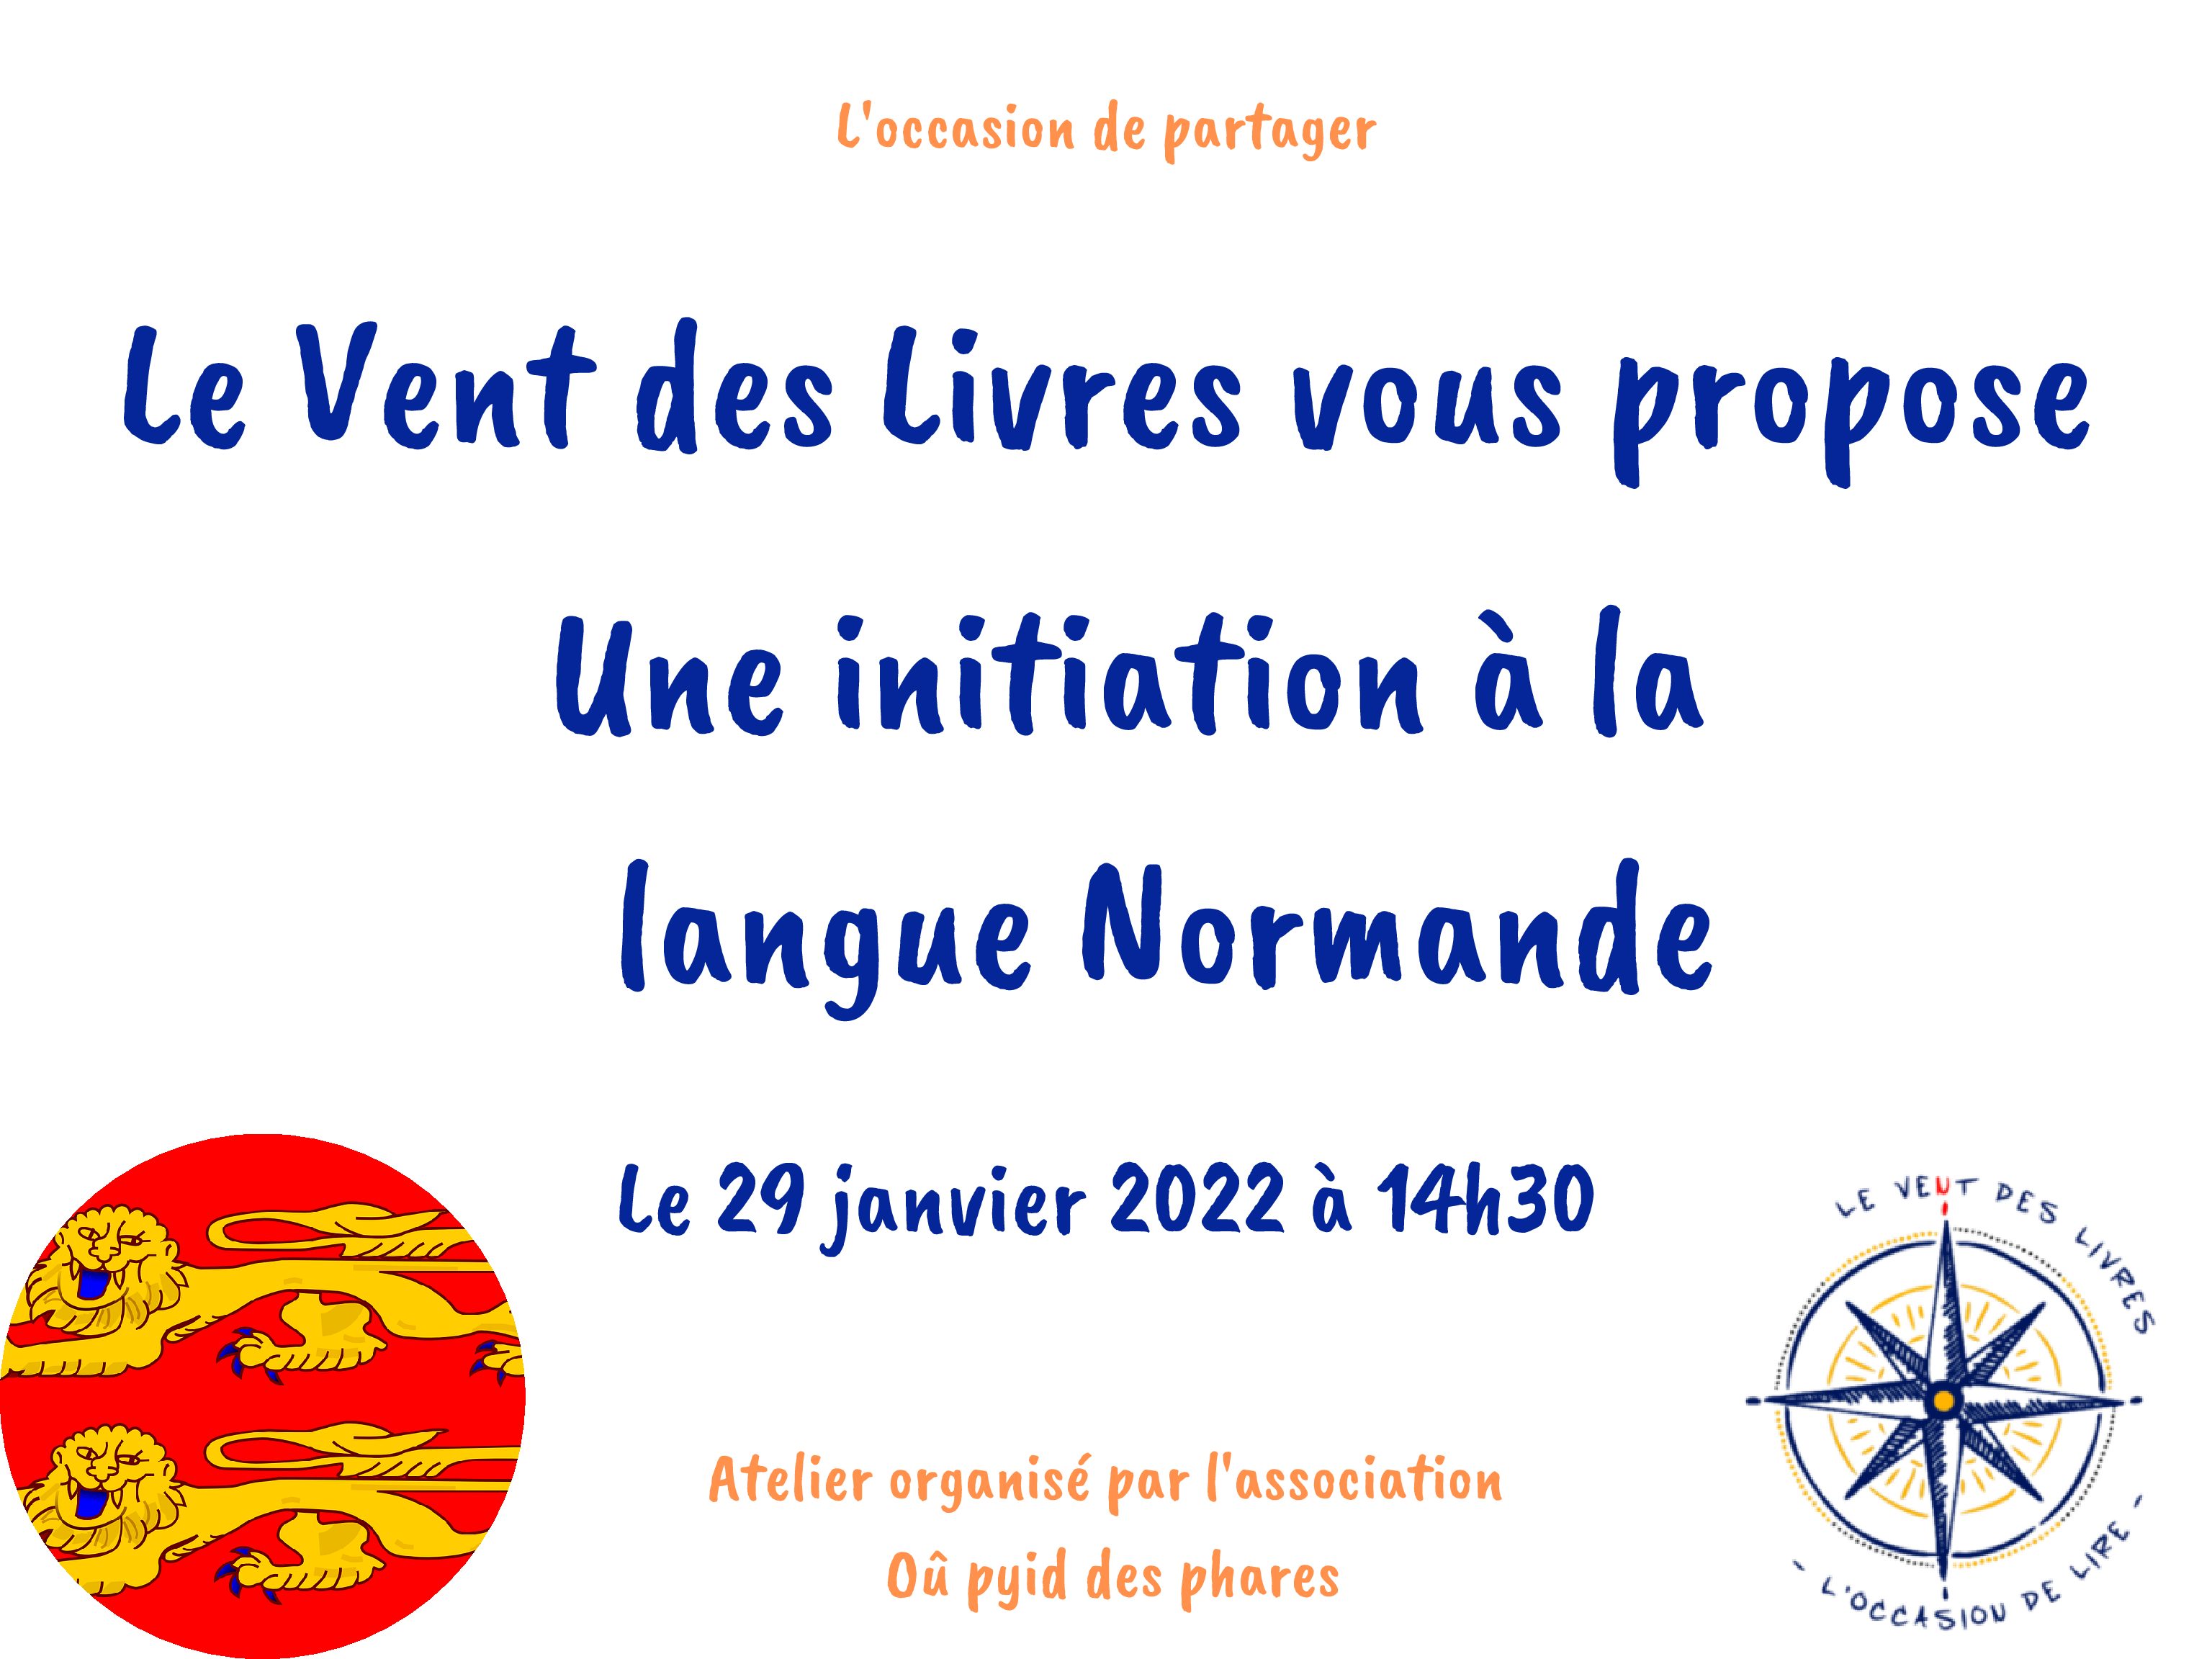 Initiation à la langue Normande le 29 janvier de 14h30 à 16h00